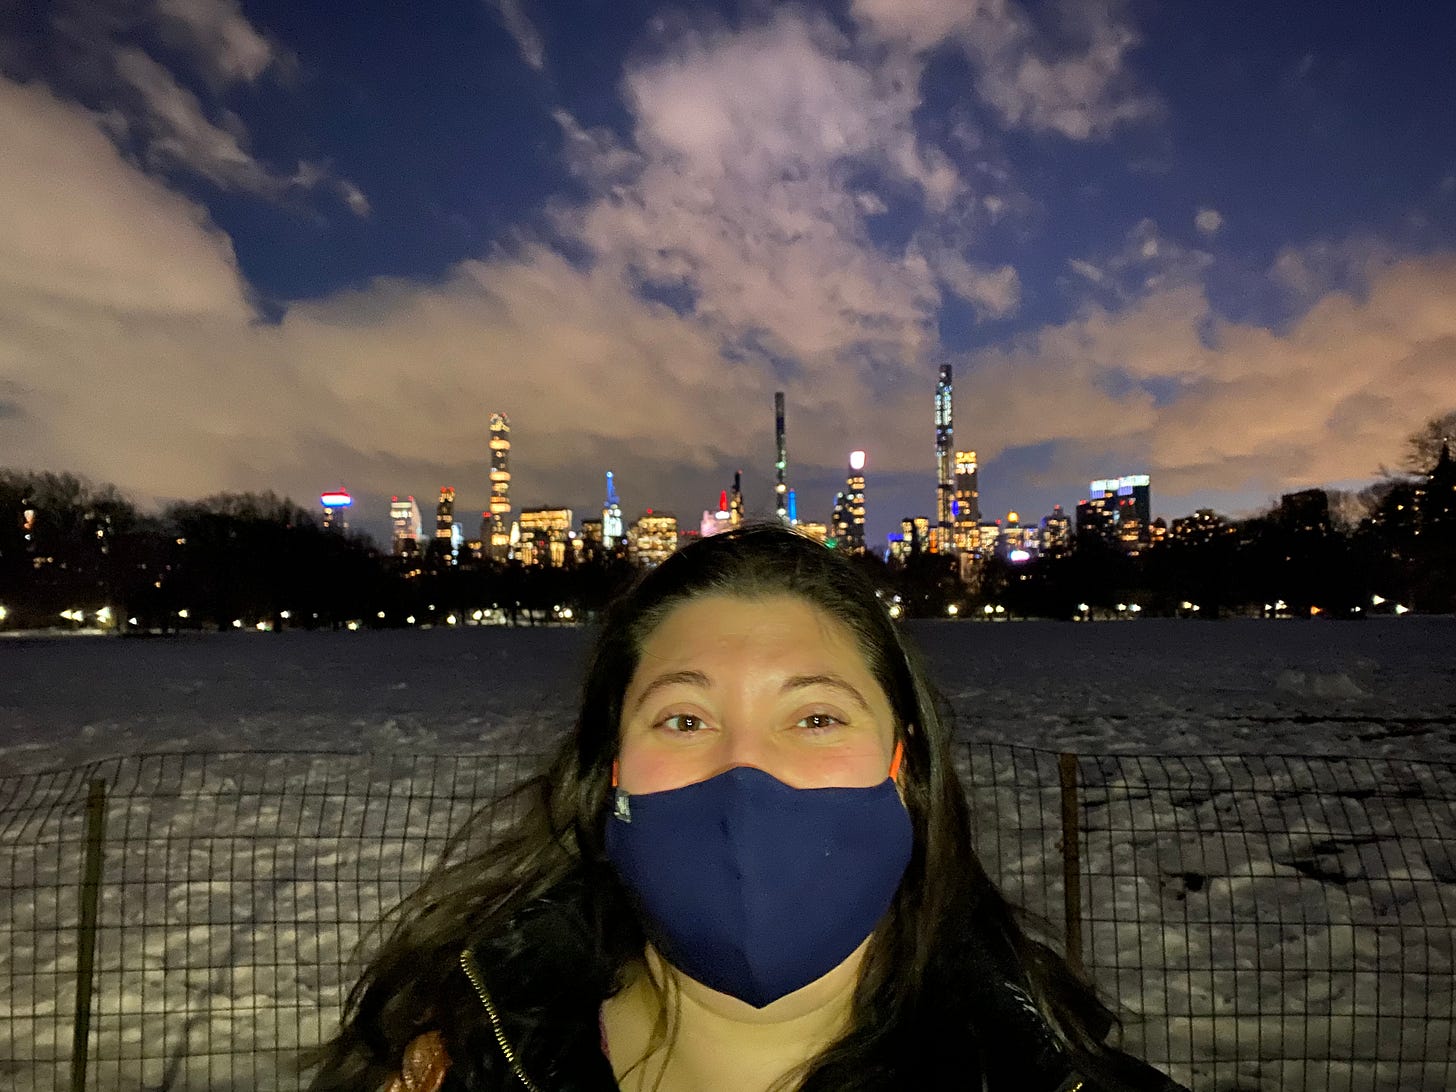 Central Park mask selfie